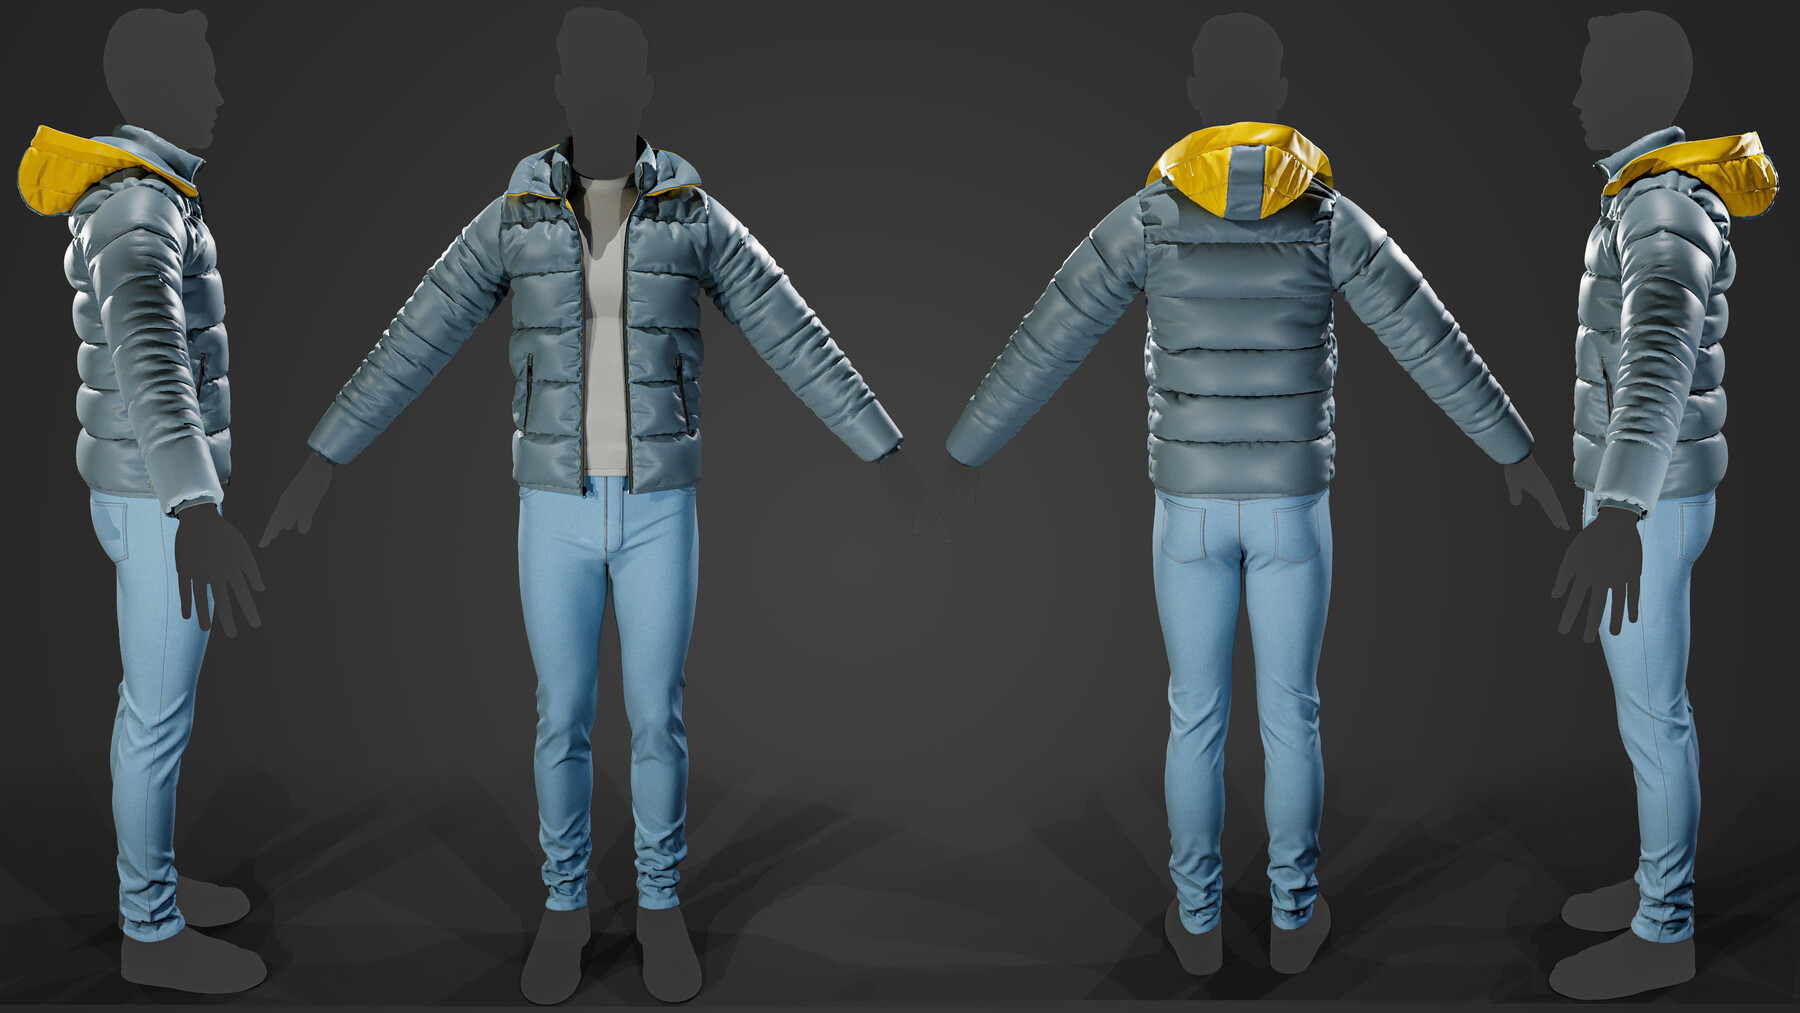 ArtStation - Puffer Jacket + Winter style + Male / Female + Clo3D ...